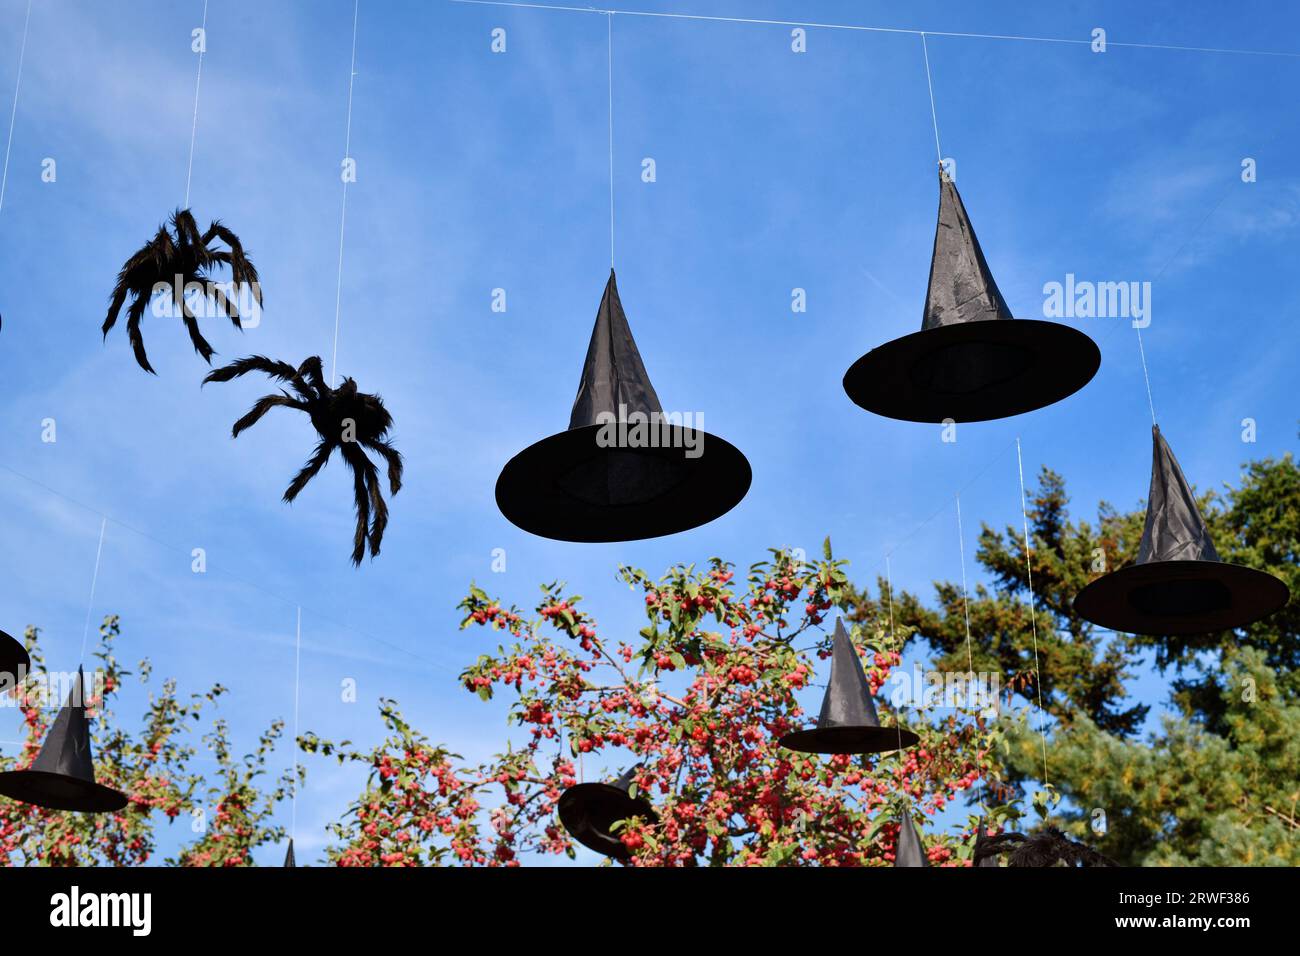 Chapeaux de sorcière et araignées décoration Halloween accrochée dans le ciel Banque D'Images